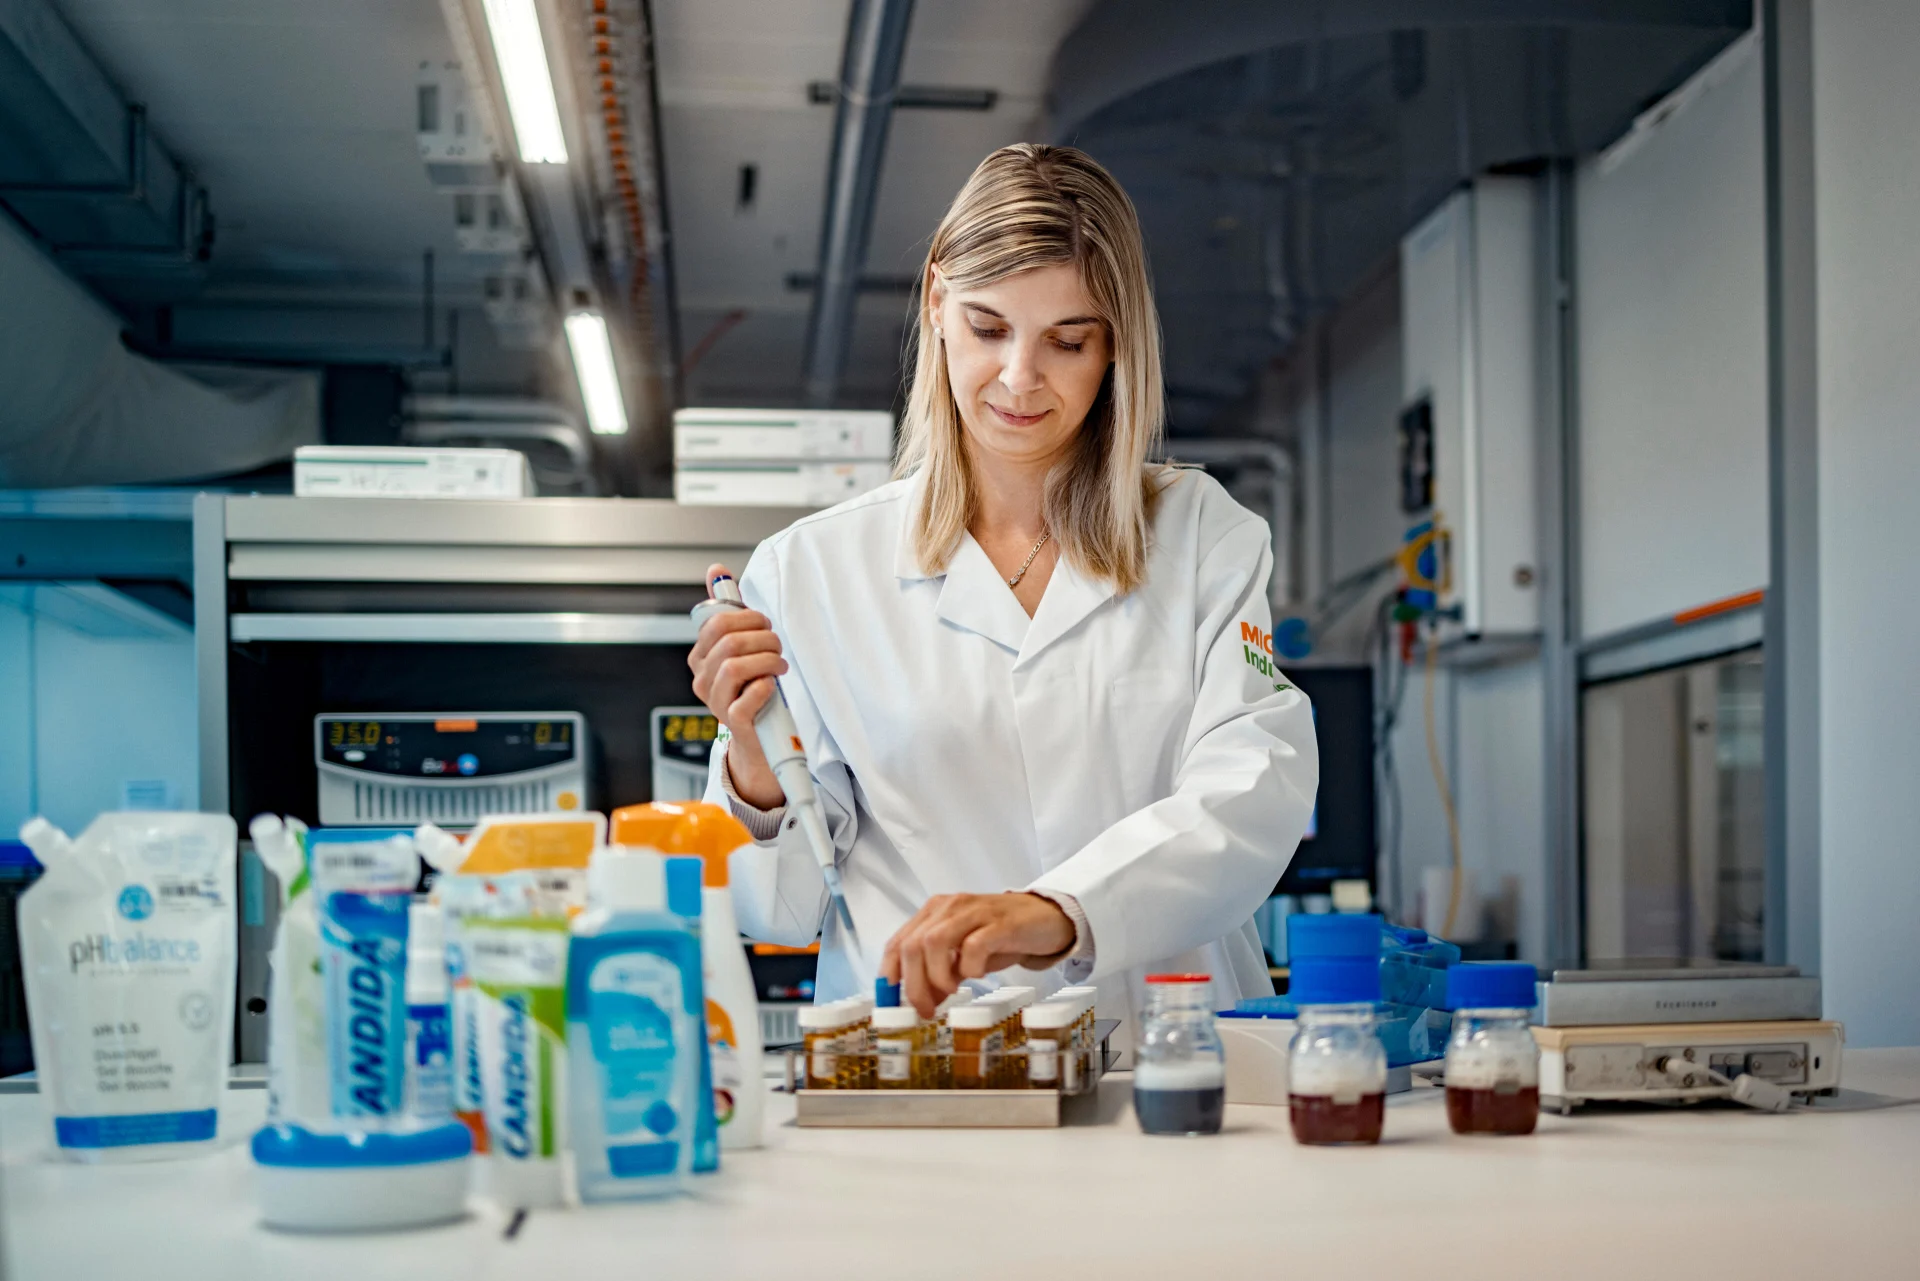 Eine Frau in einem weissen Kittel steht in einem Labor und arbeitet. Vor ihr diverse Migros-Produkte.